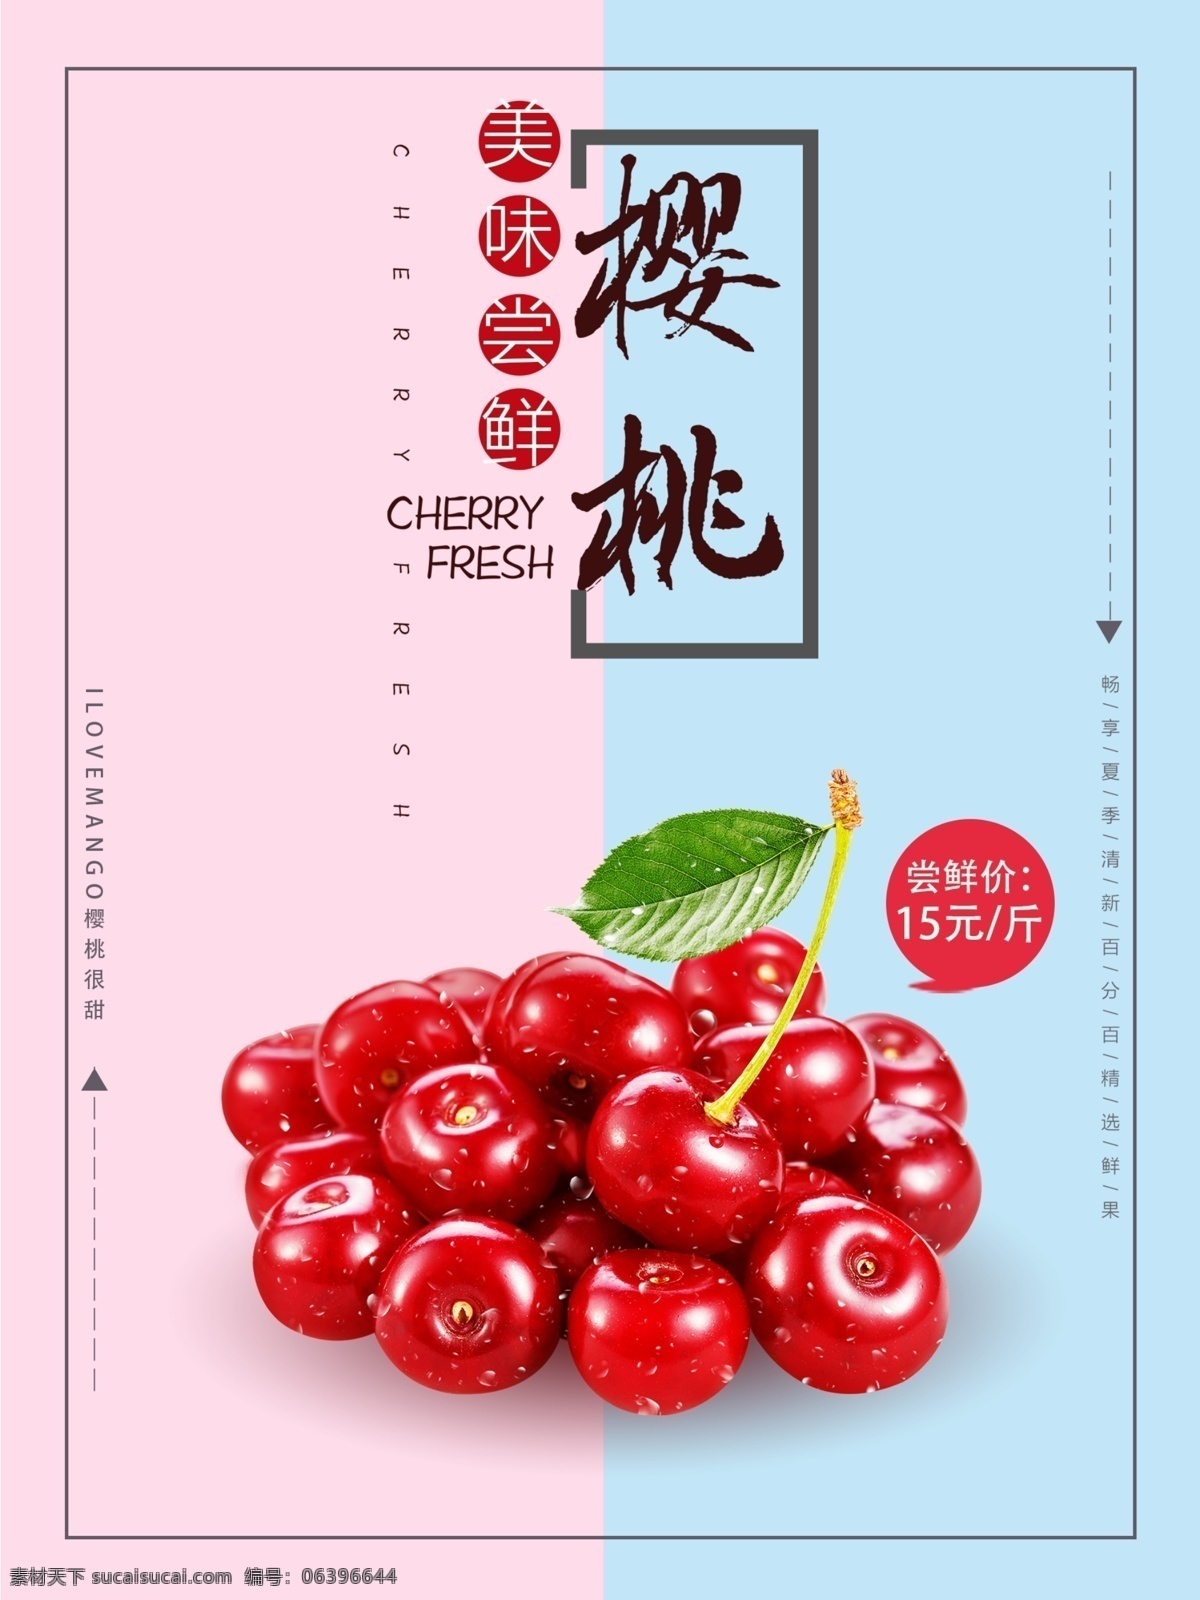 粉 蓝色 甜 系 樱桃 促销 海报 餐饮 美食 美味食物 水果 水果蔬菜 促销海报 粉色